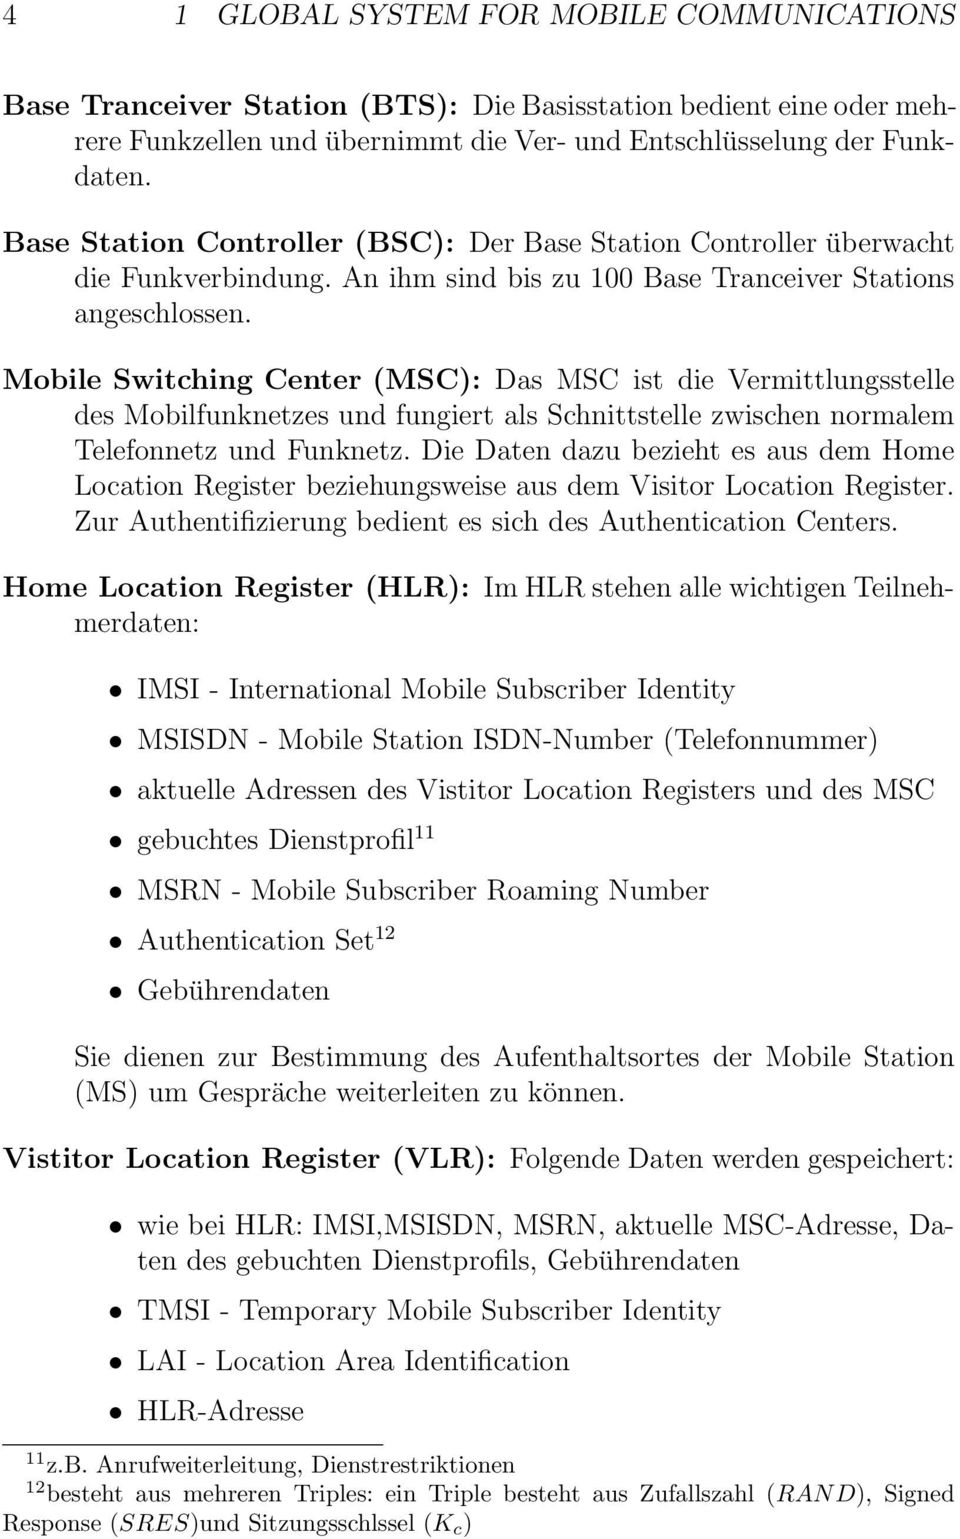 Mobile Switching Center (MSC): Das MSC ist die Vermittlungsstelle des Mobilfunknetzes und fungiert als Schnittstelle zwischen normalem Telefonnetz und Funknetz.